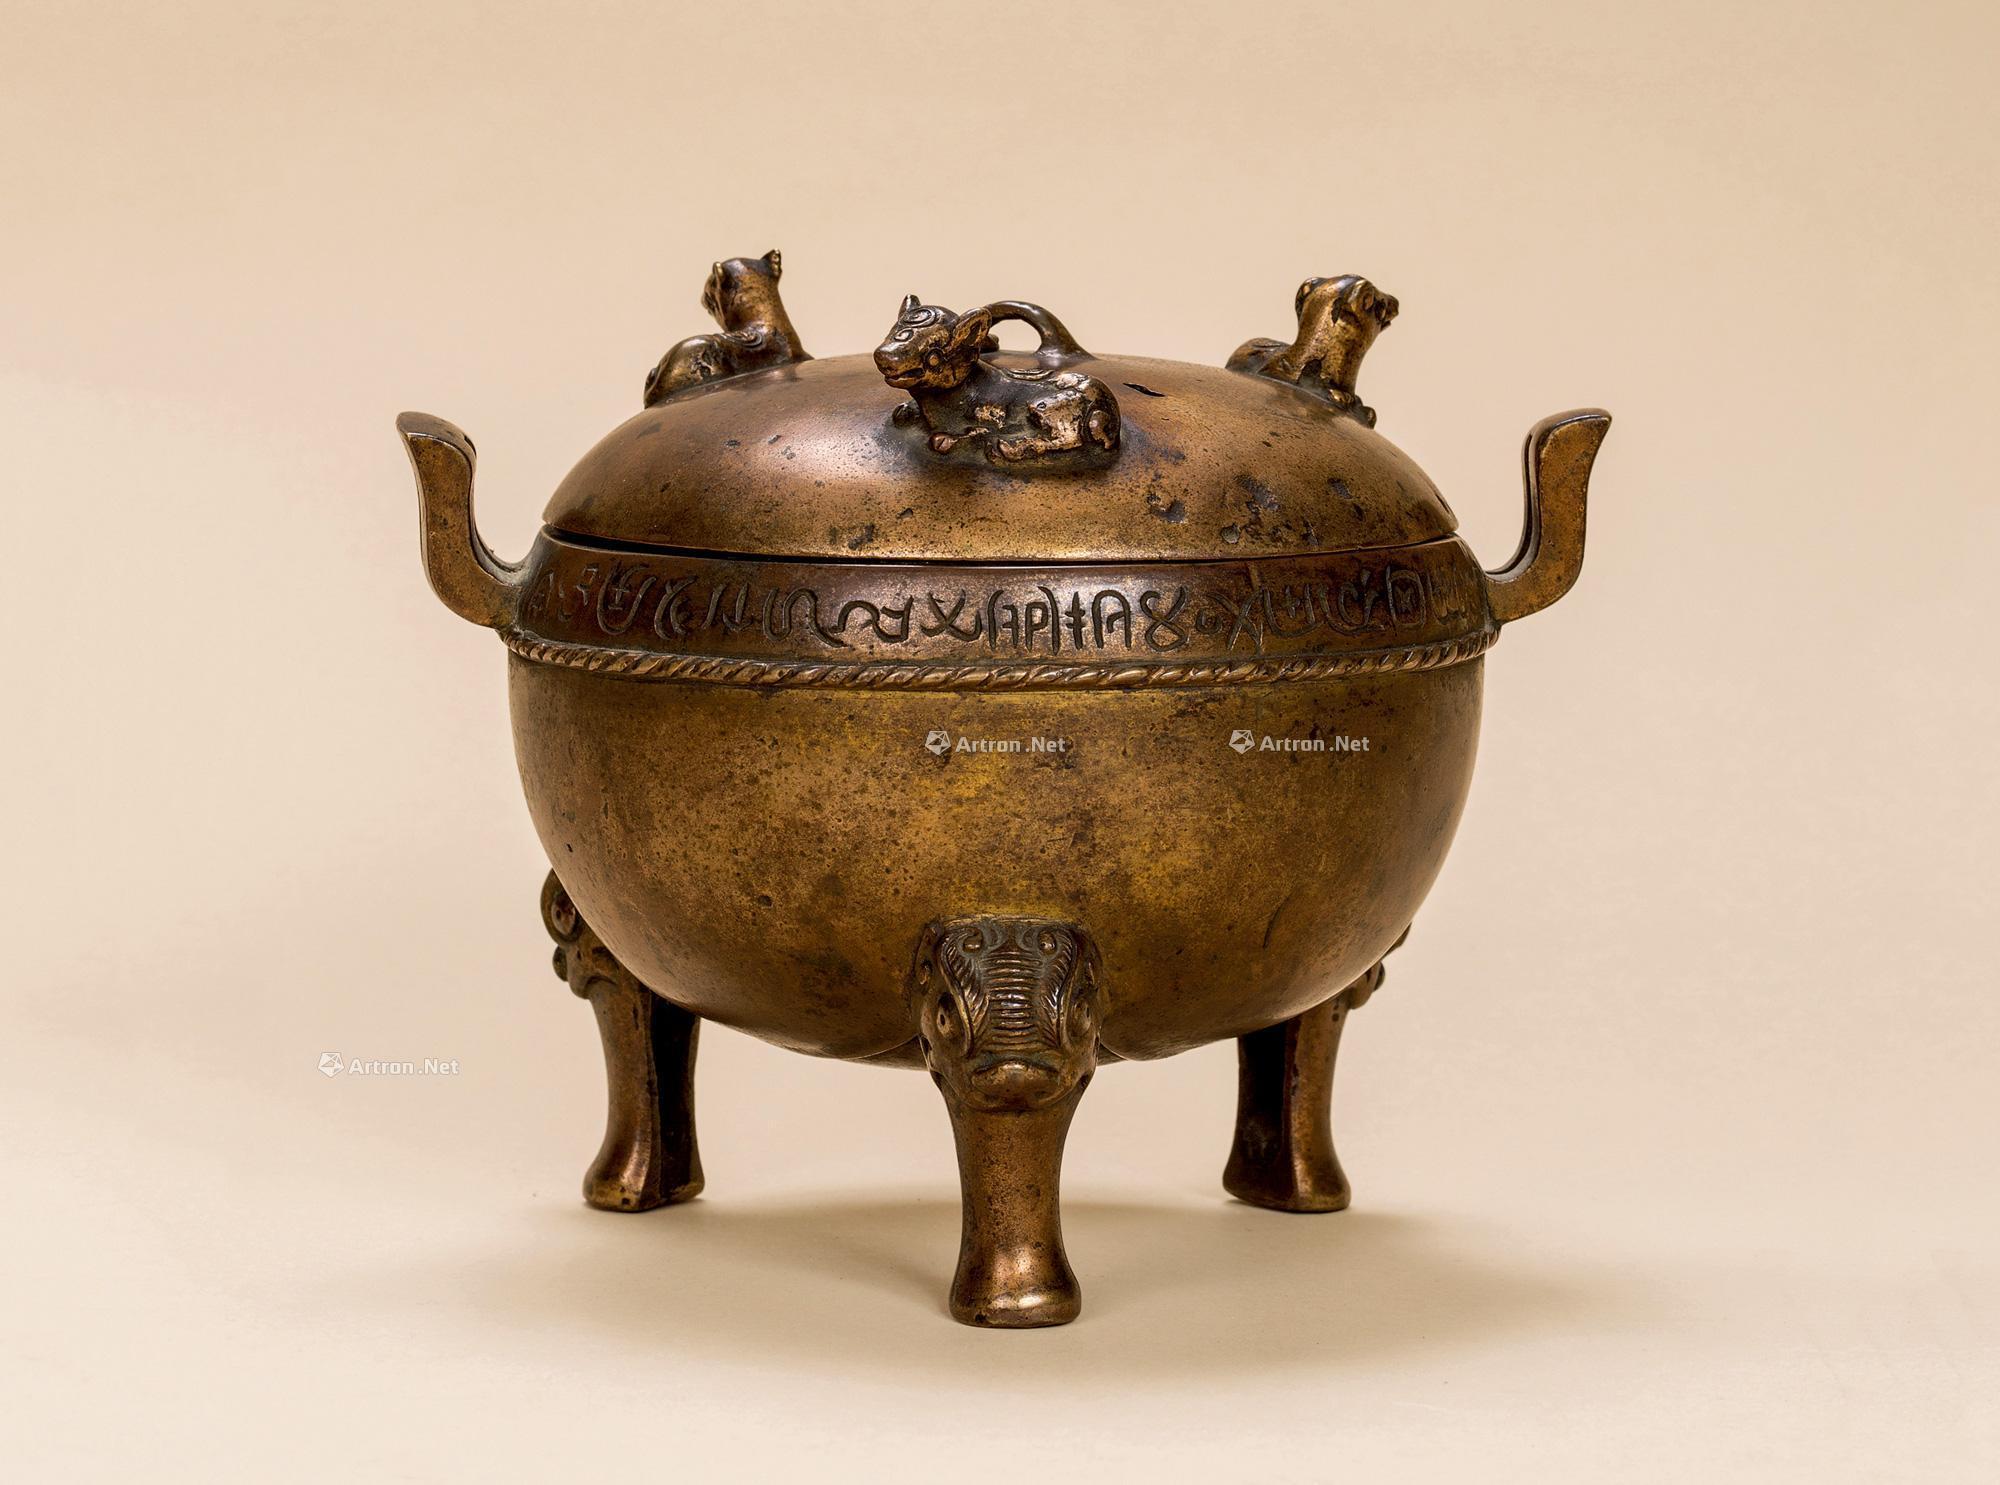 陕西历史博物馆藏鎏金银竹节铜熏炉的图像学观察